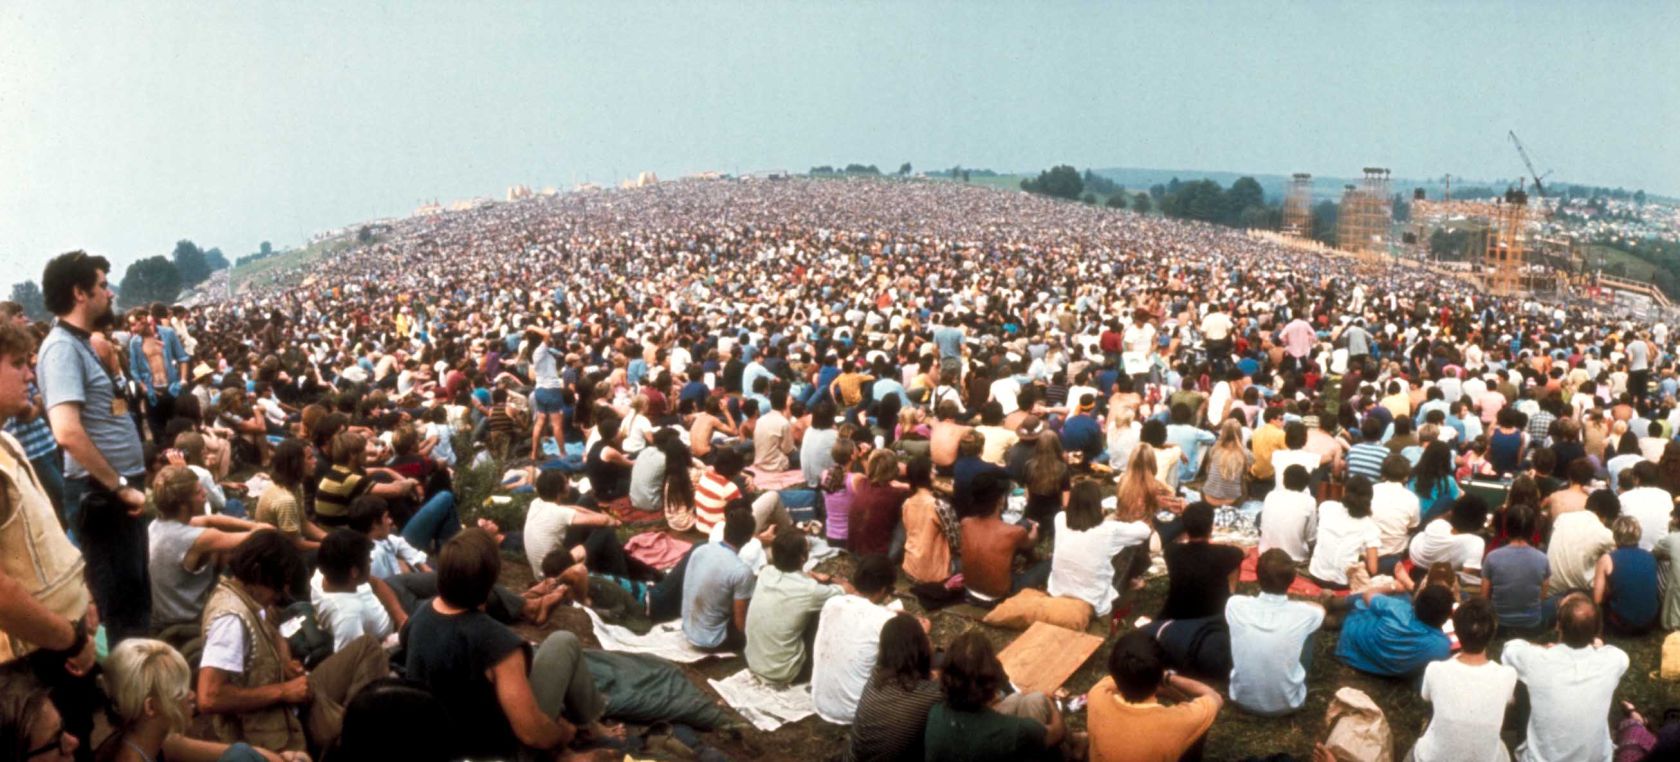 Vuelve Woodstock, el festival que lo cambió todo, 50 años después